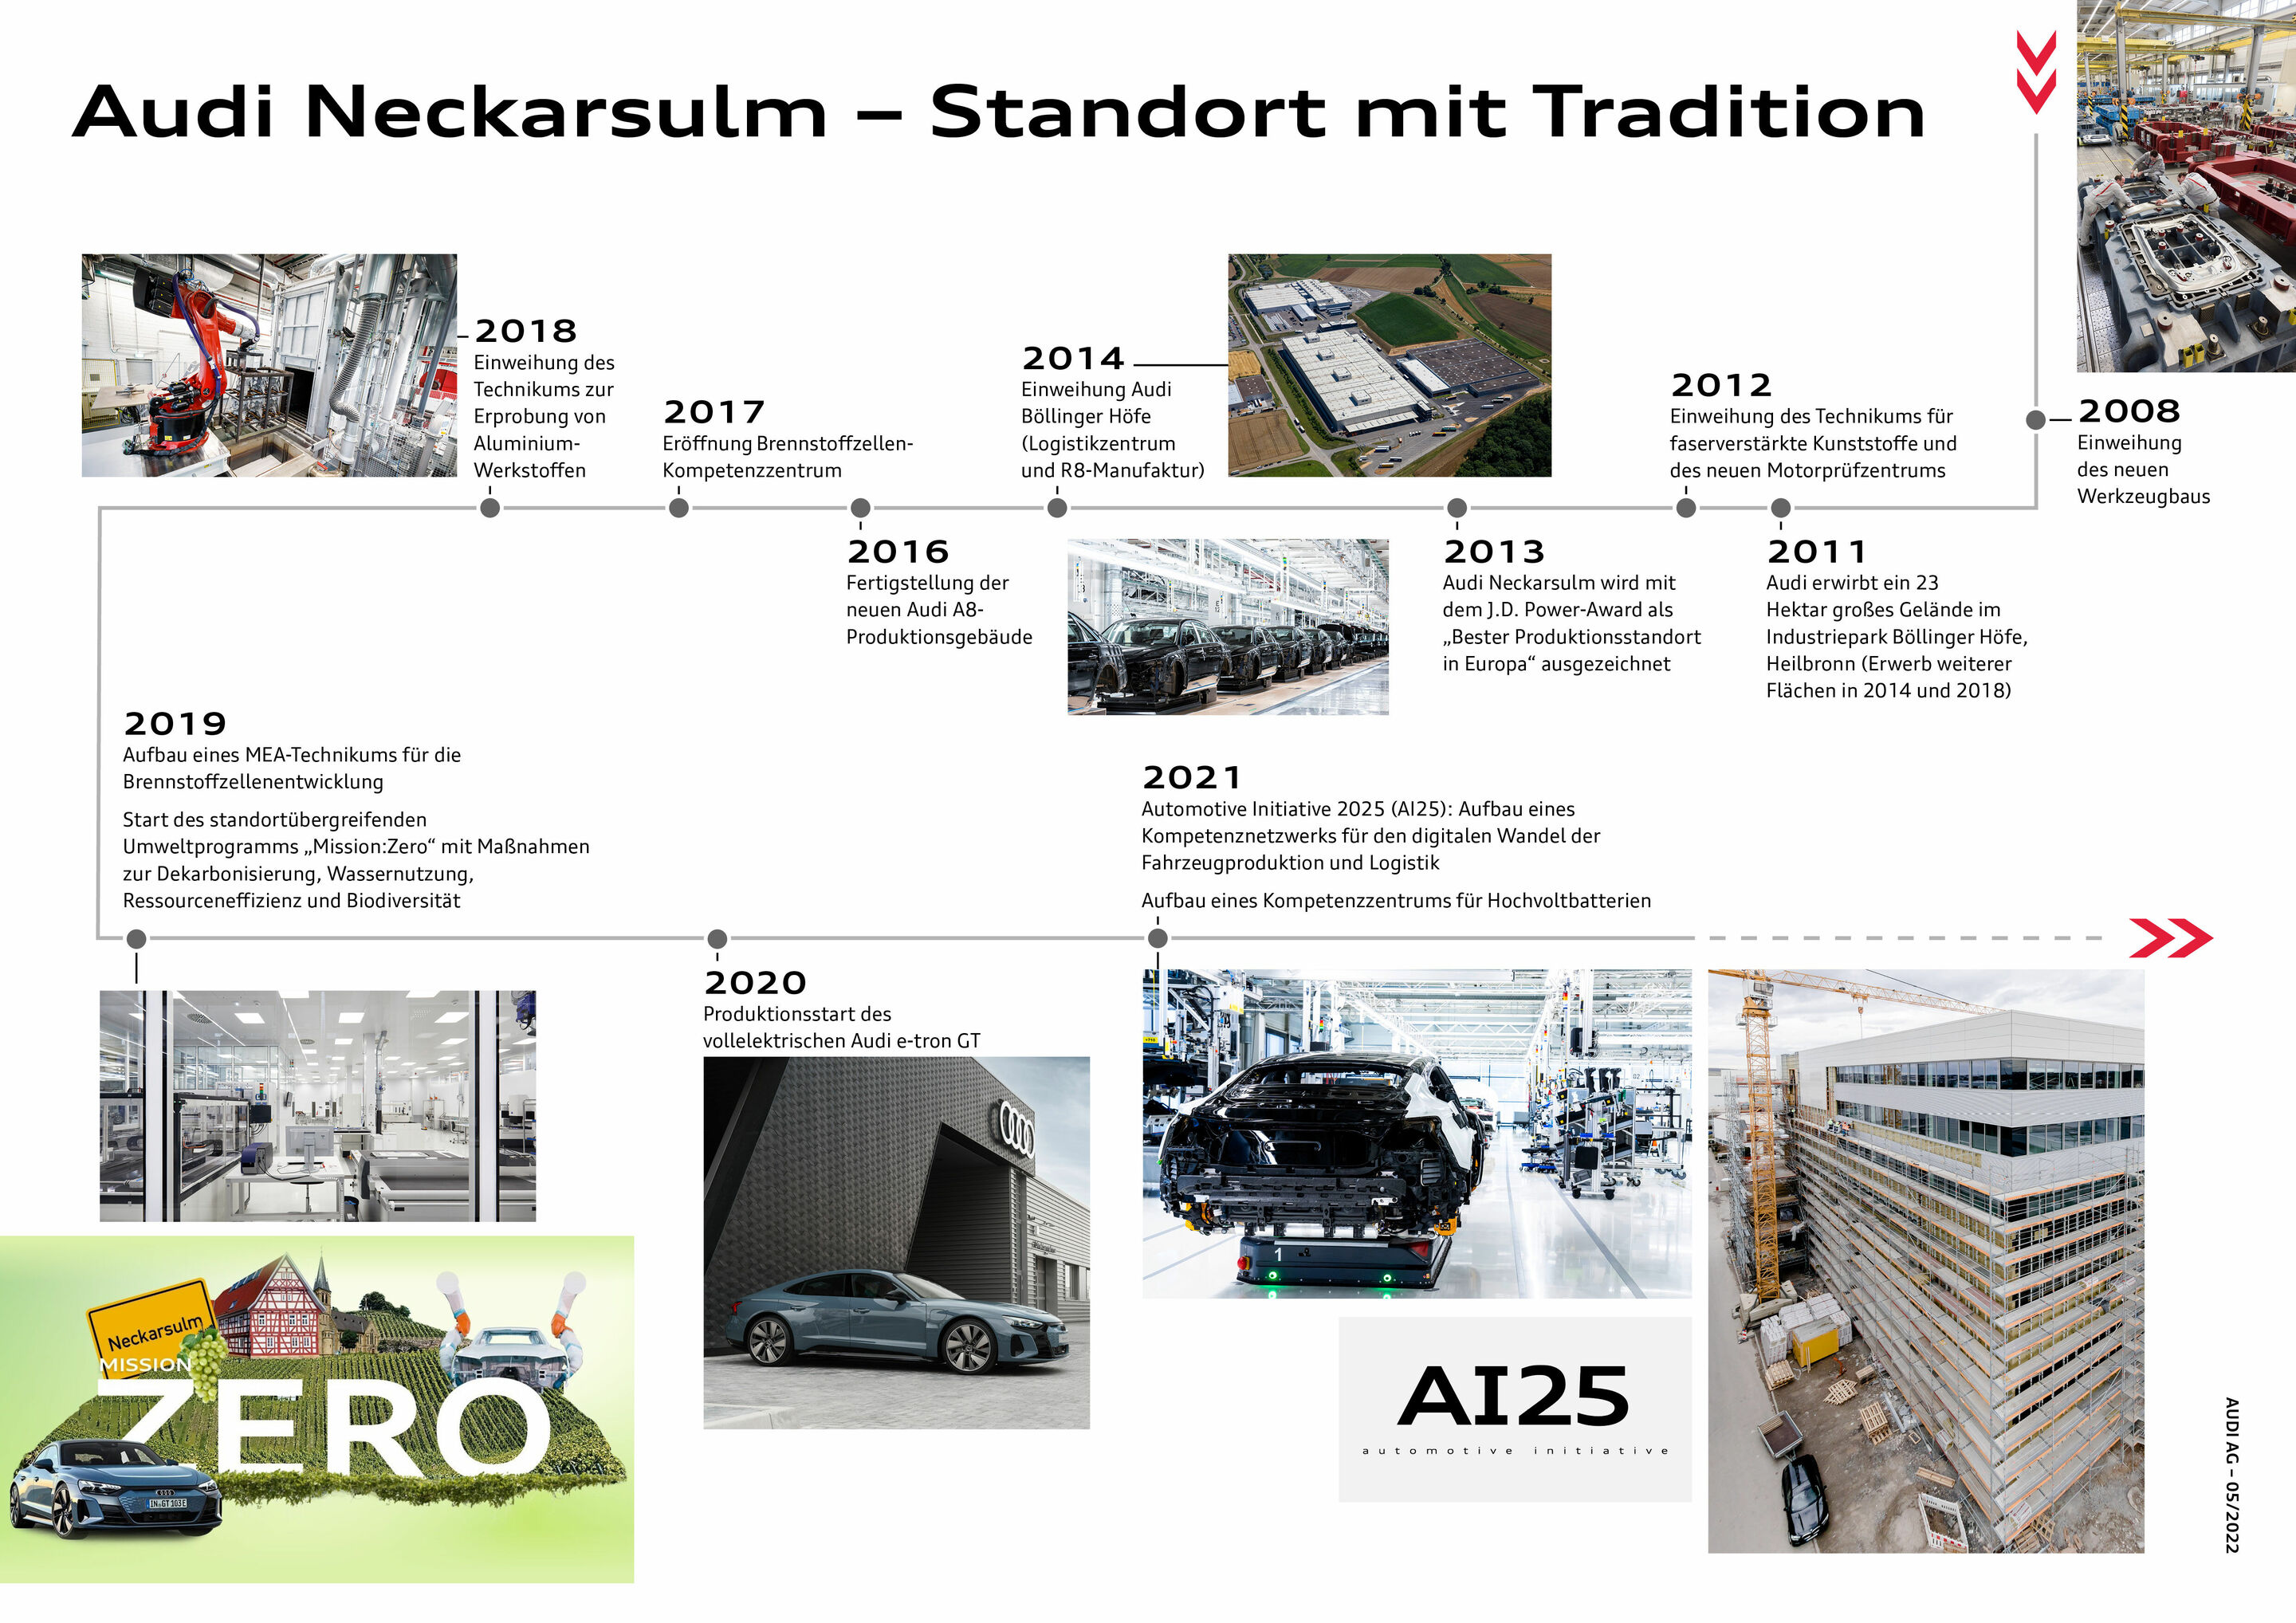 Audi Neckarsulm - Standort mit Tradition